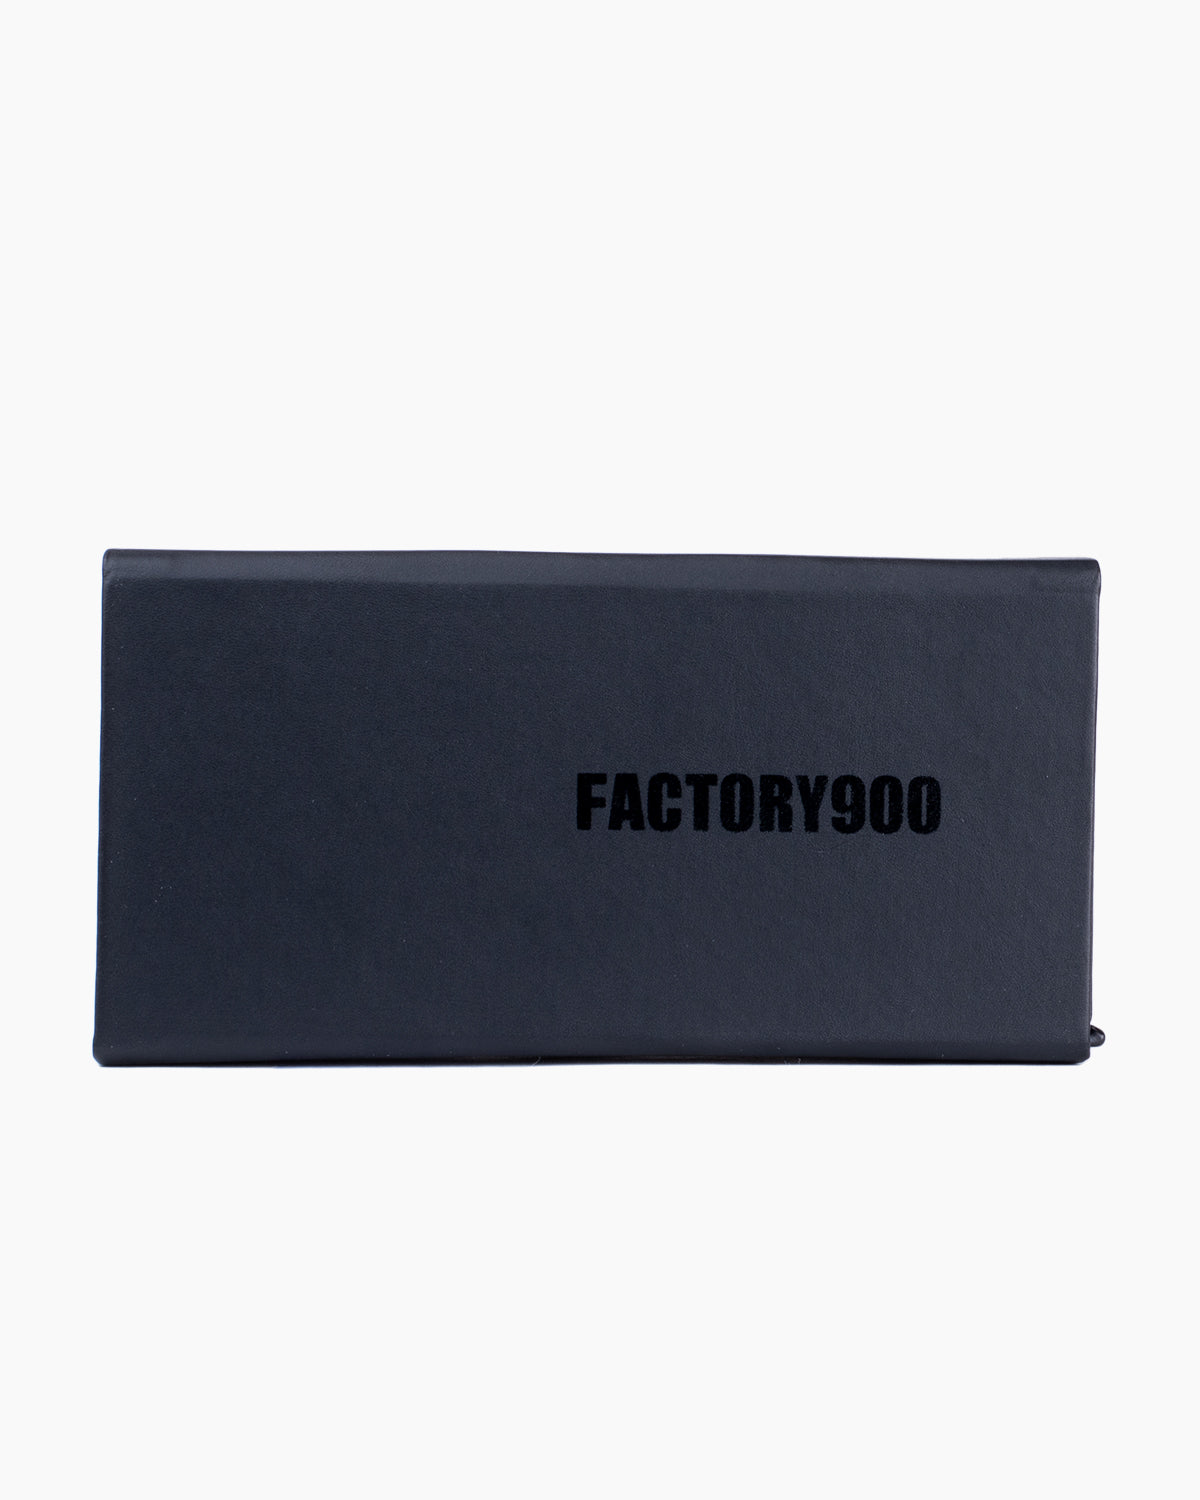 Factory 900 - RF140 - 493 | glasses bar